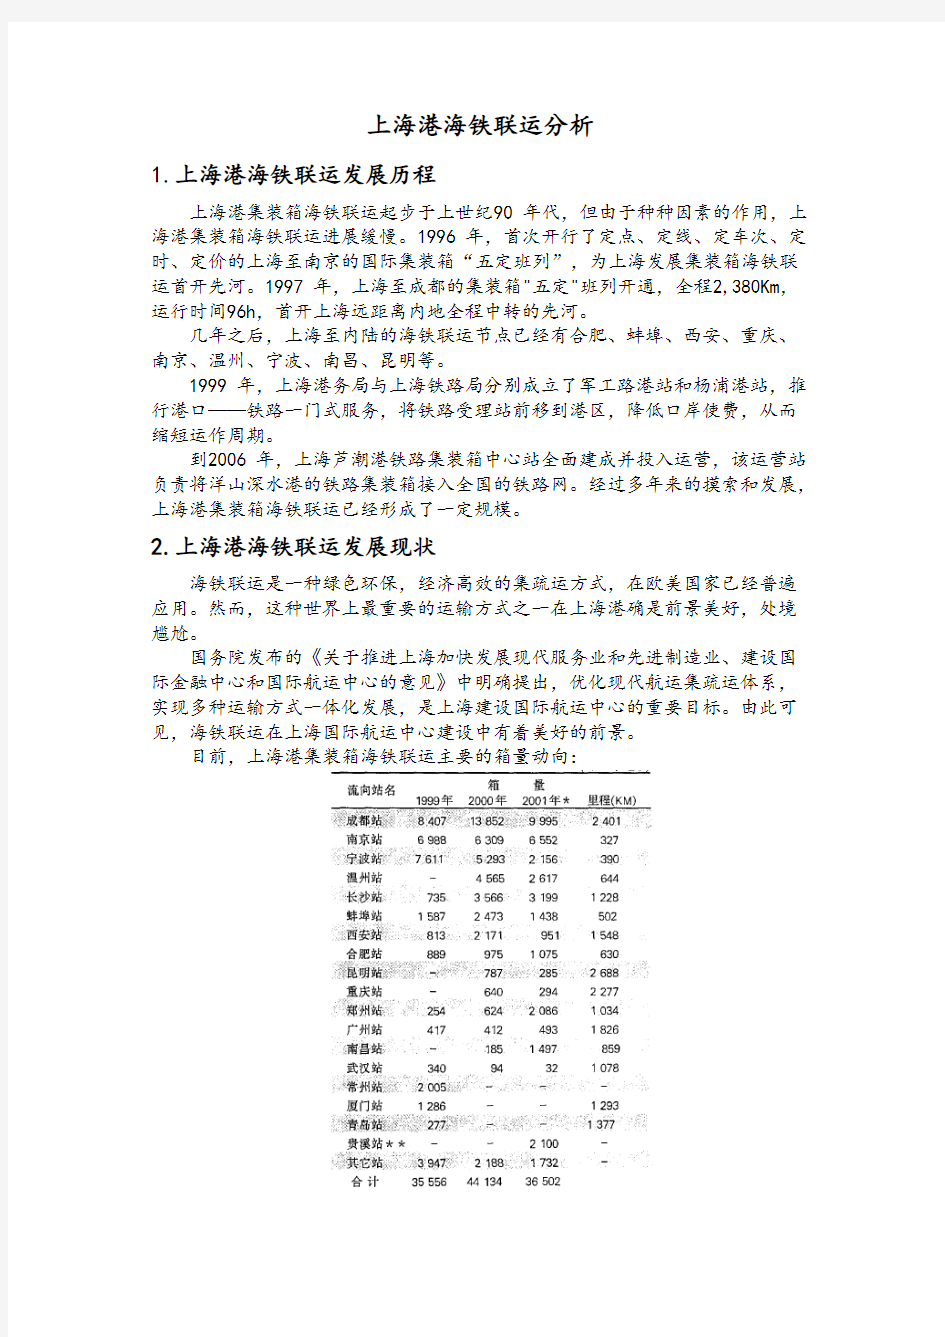 上海港海铁联运分析-推荐下载